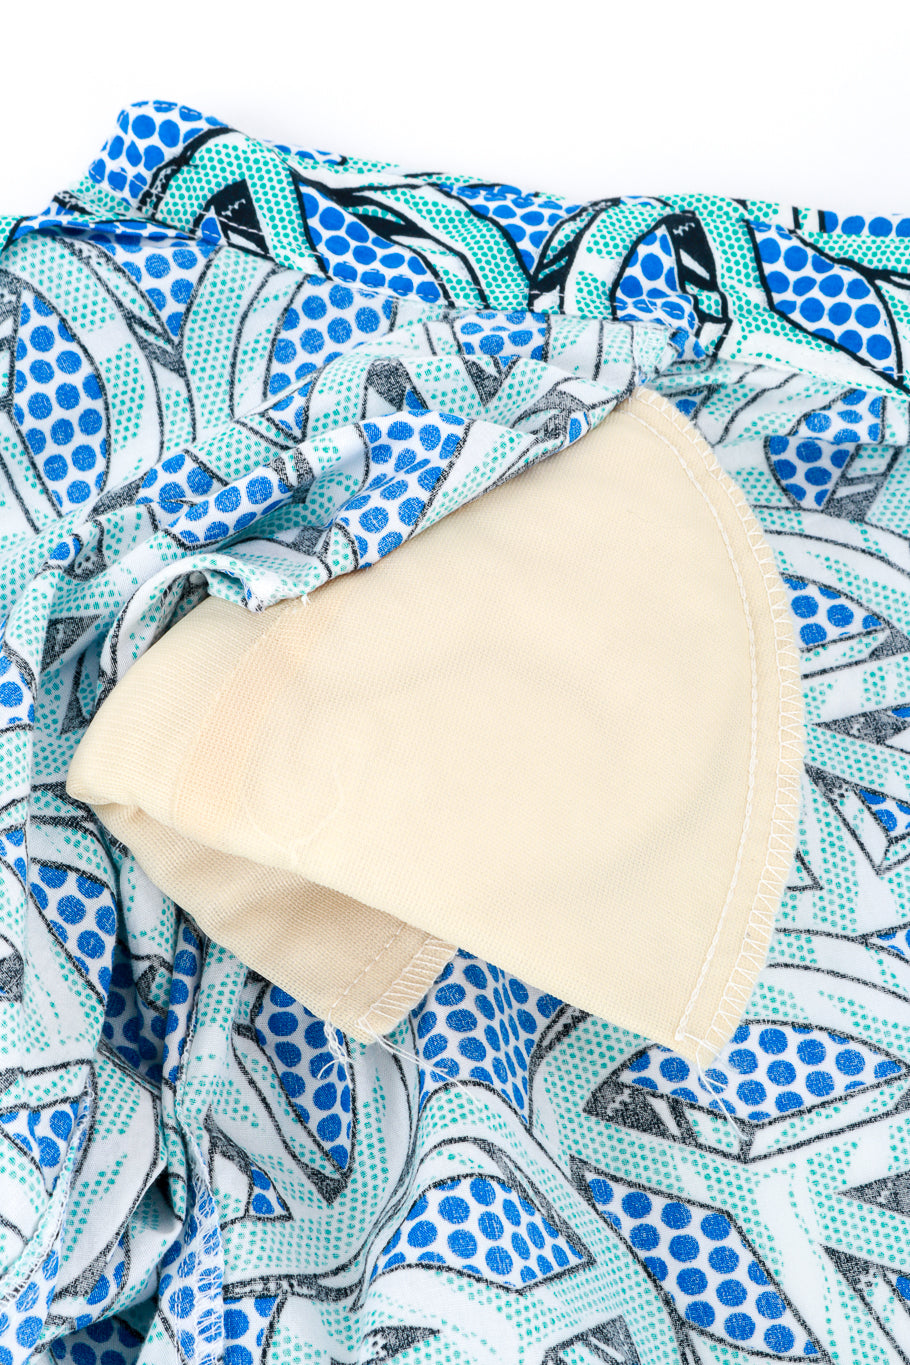 Vintage Moschino Peace Print Shirt shoulder pad closeup @recess la